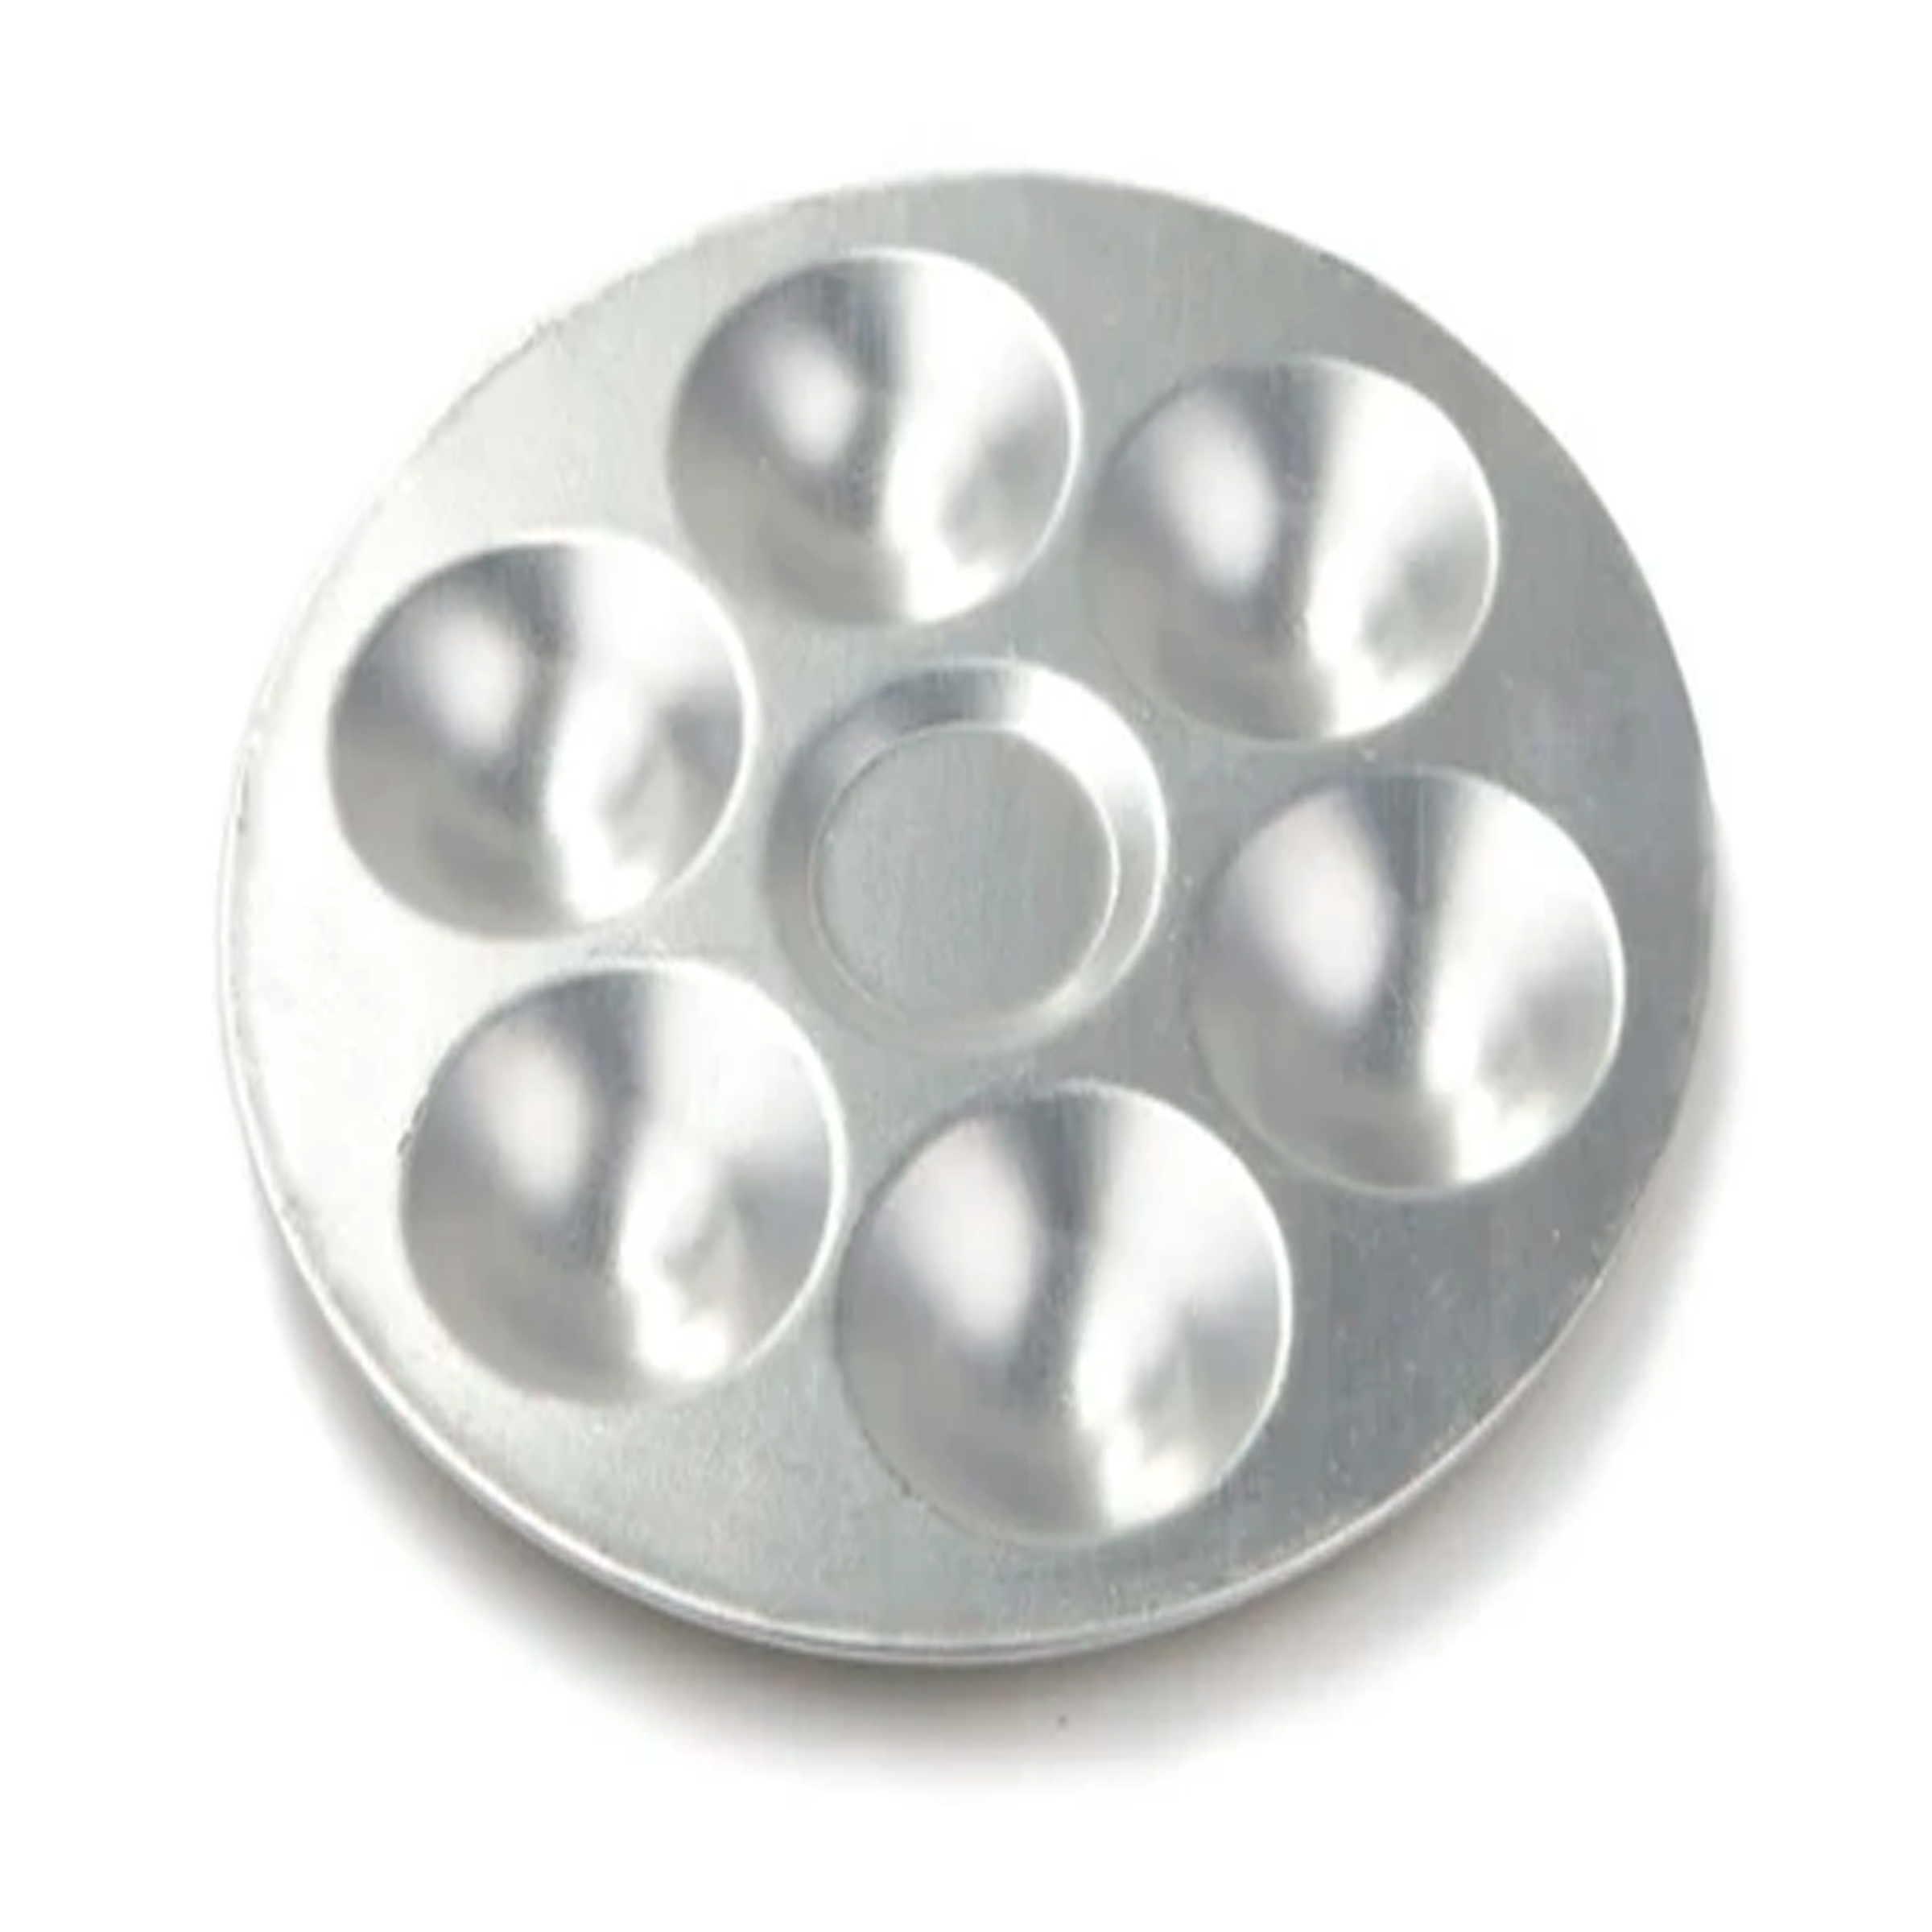 ATL - Godete circular de aluminio con  6 cavidades